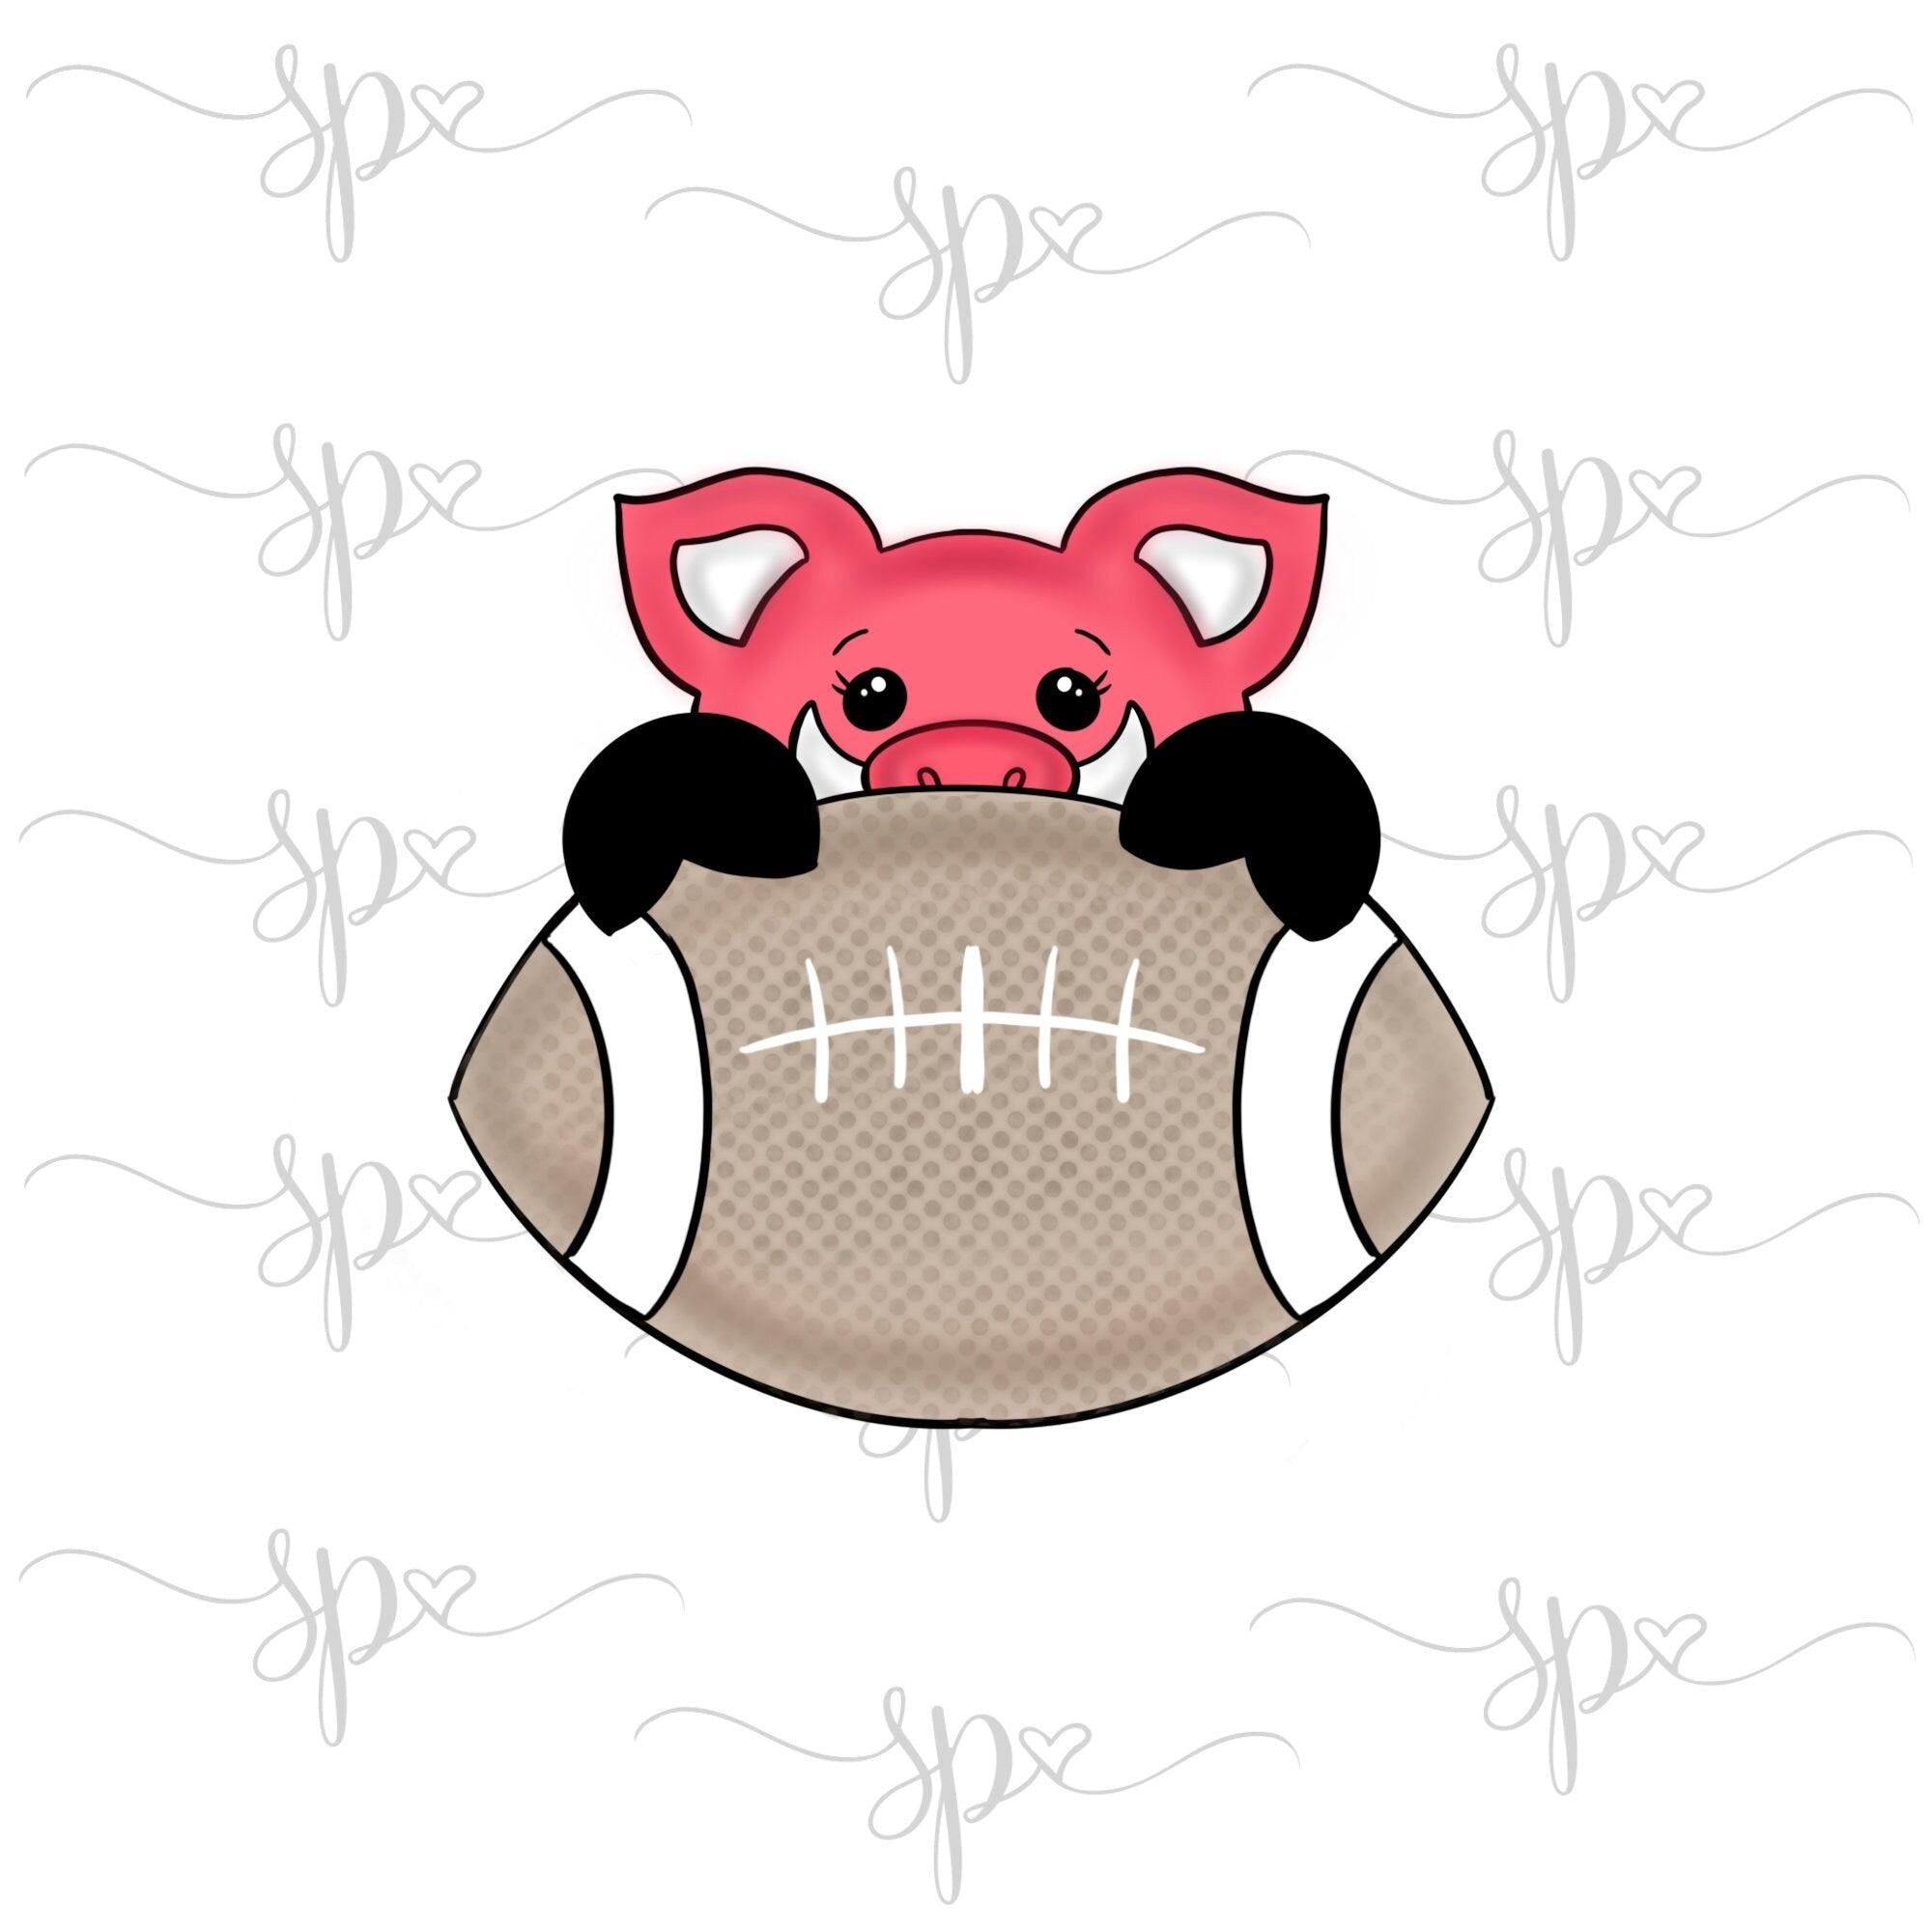 Hog Football Cookie Cutter - Sweetleigh 